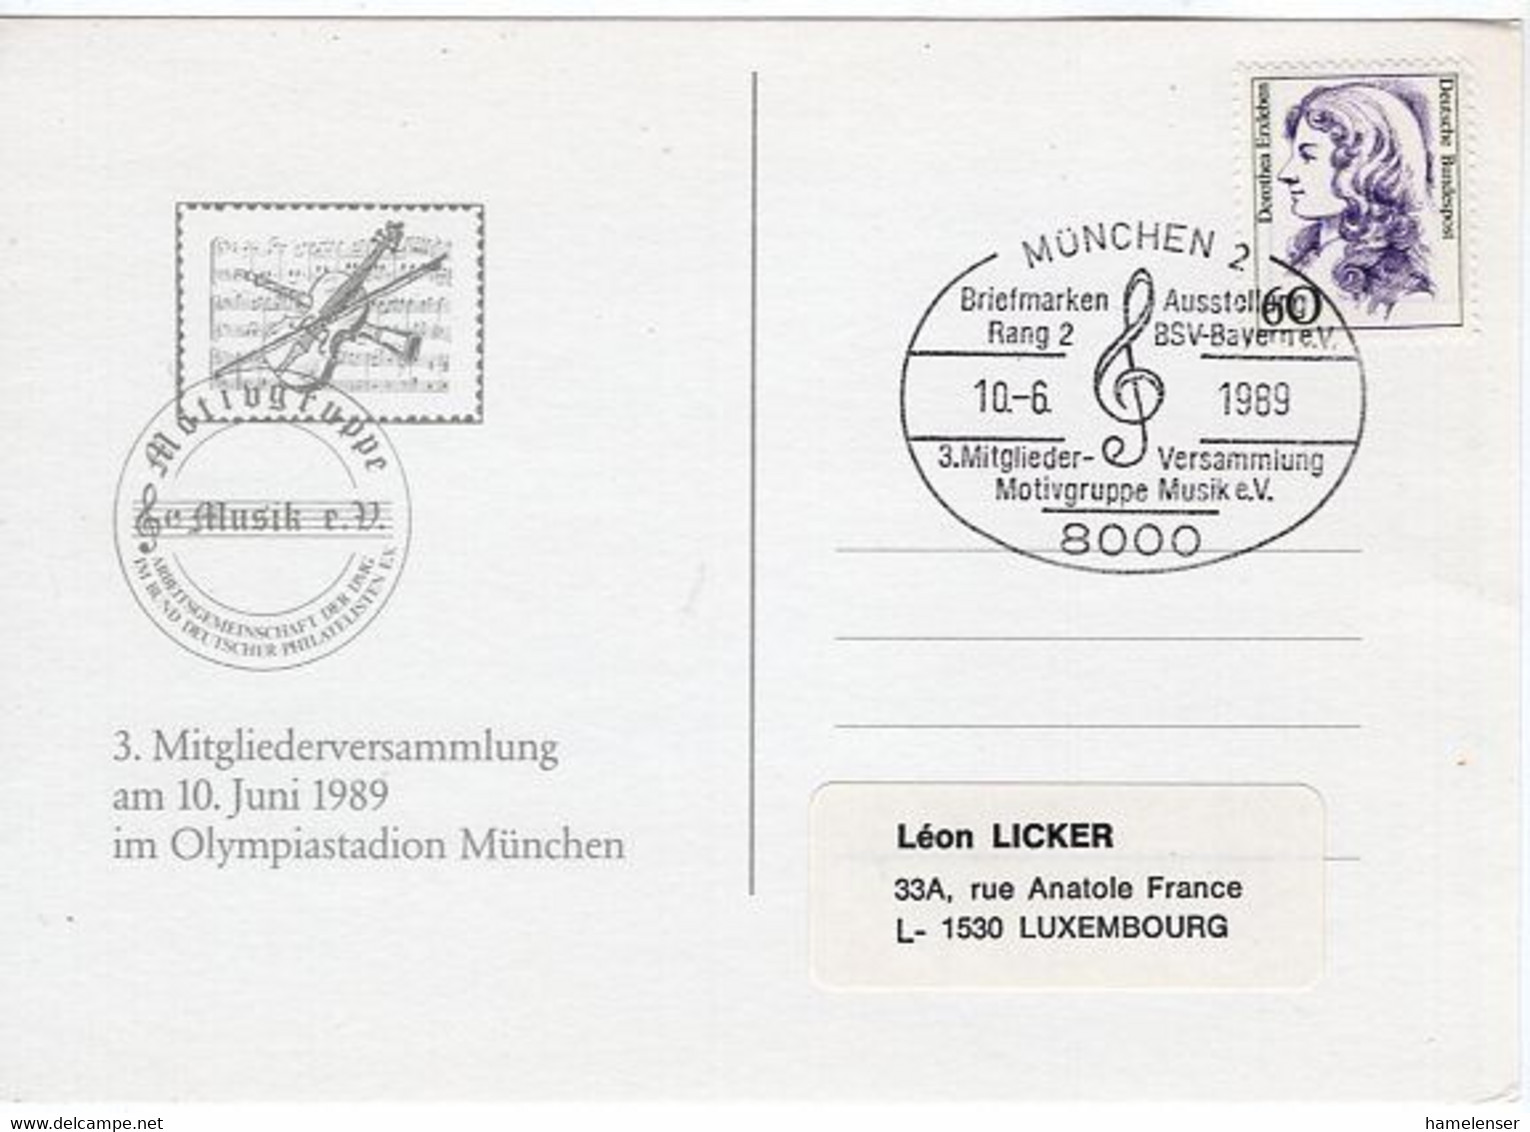 54459 - Bund - 1989 - 60Pfg Erxleben EF A Kte MUENCHEN - ... MOTIVGRUPPE MUSIK -> Luxemburg - Music